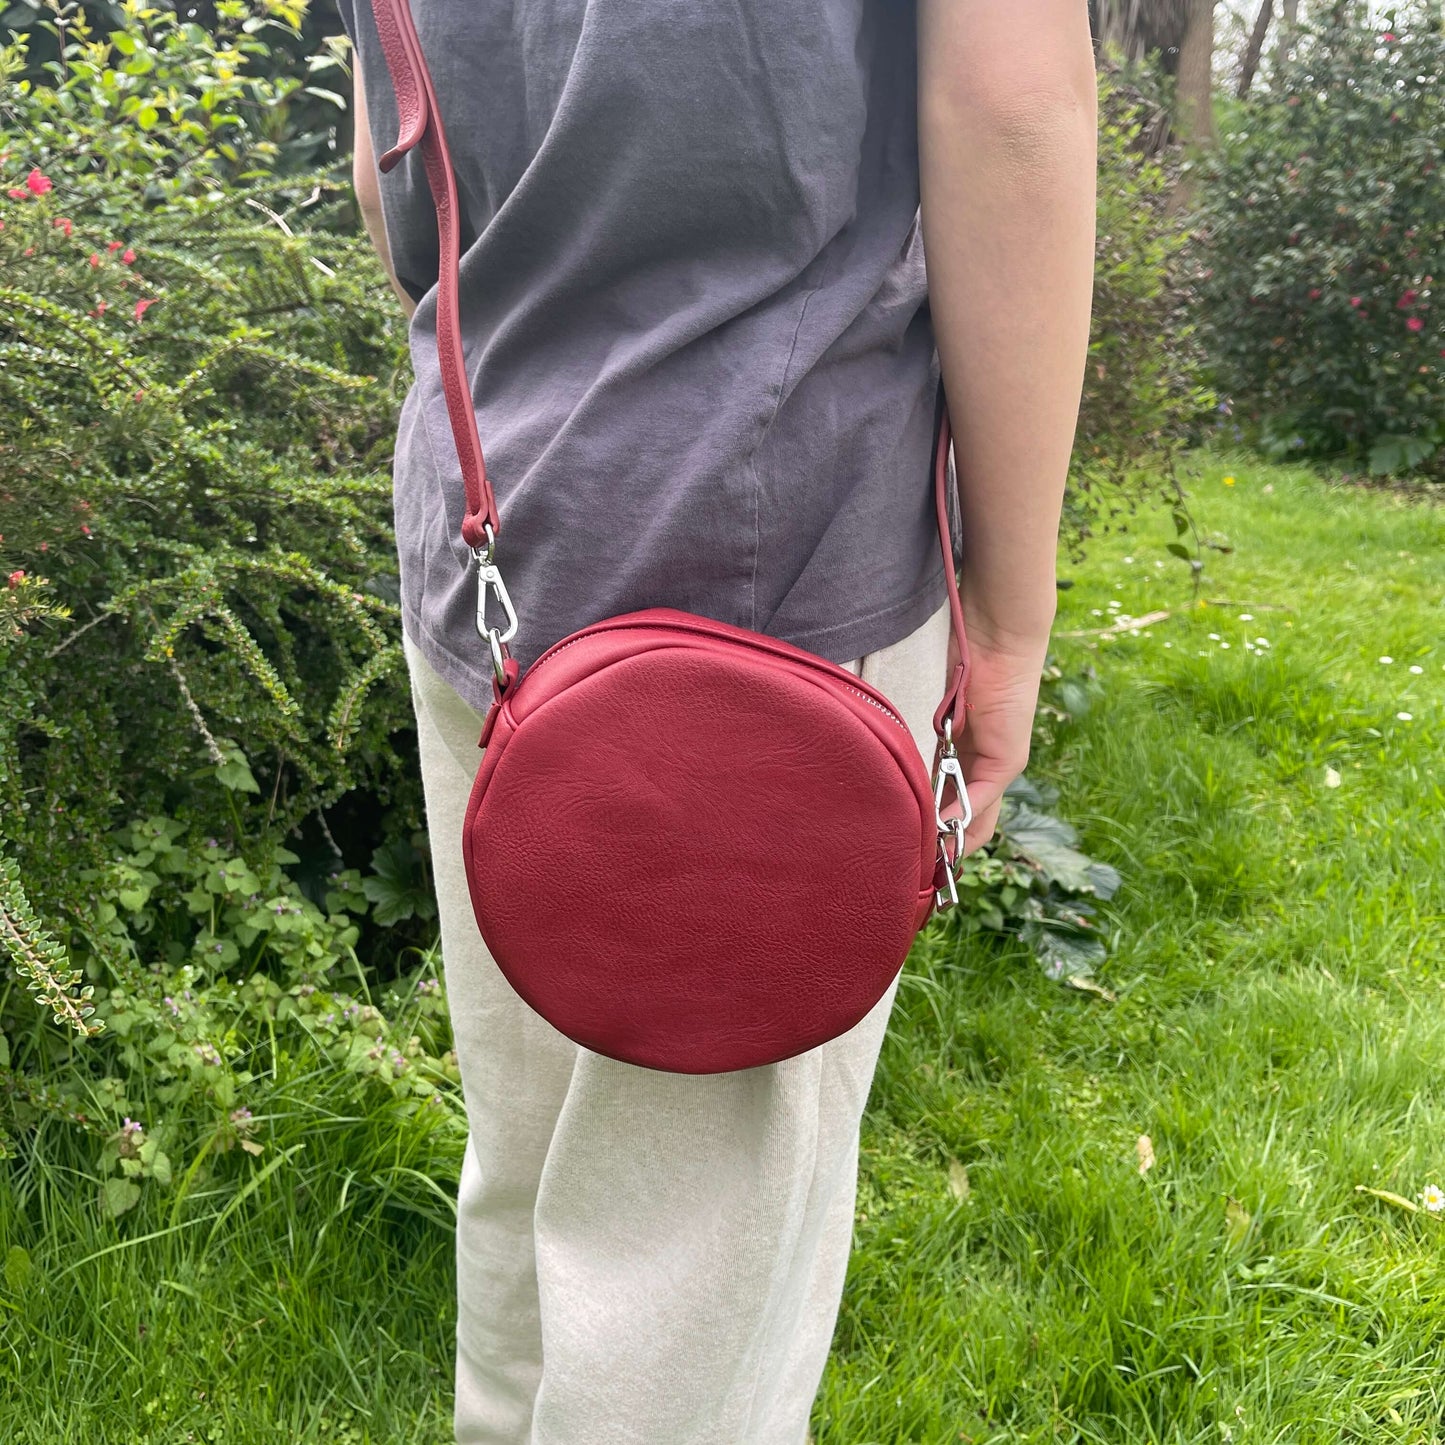 Red circular handbag with front pocket.